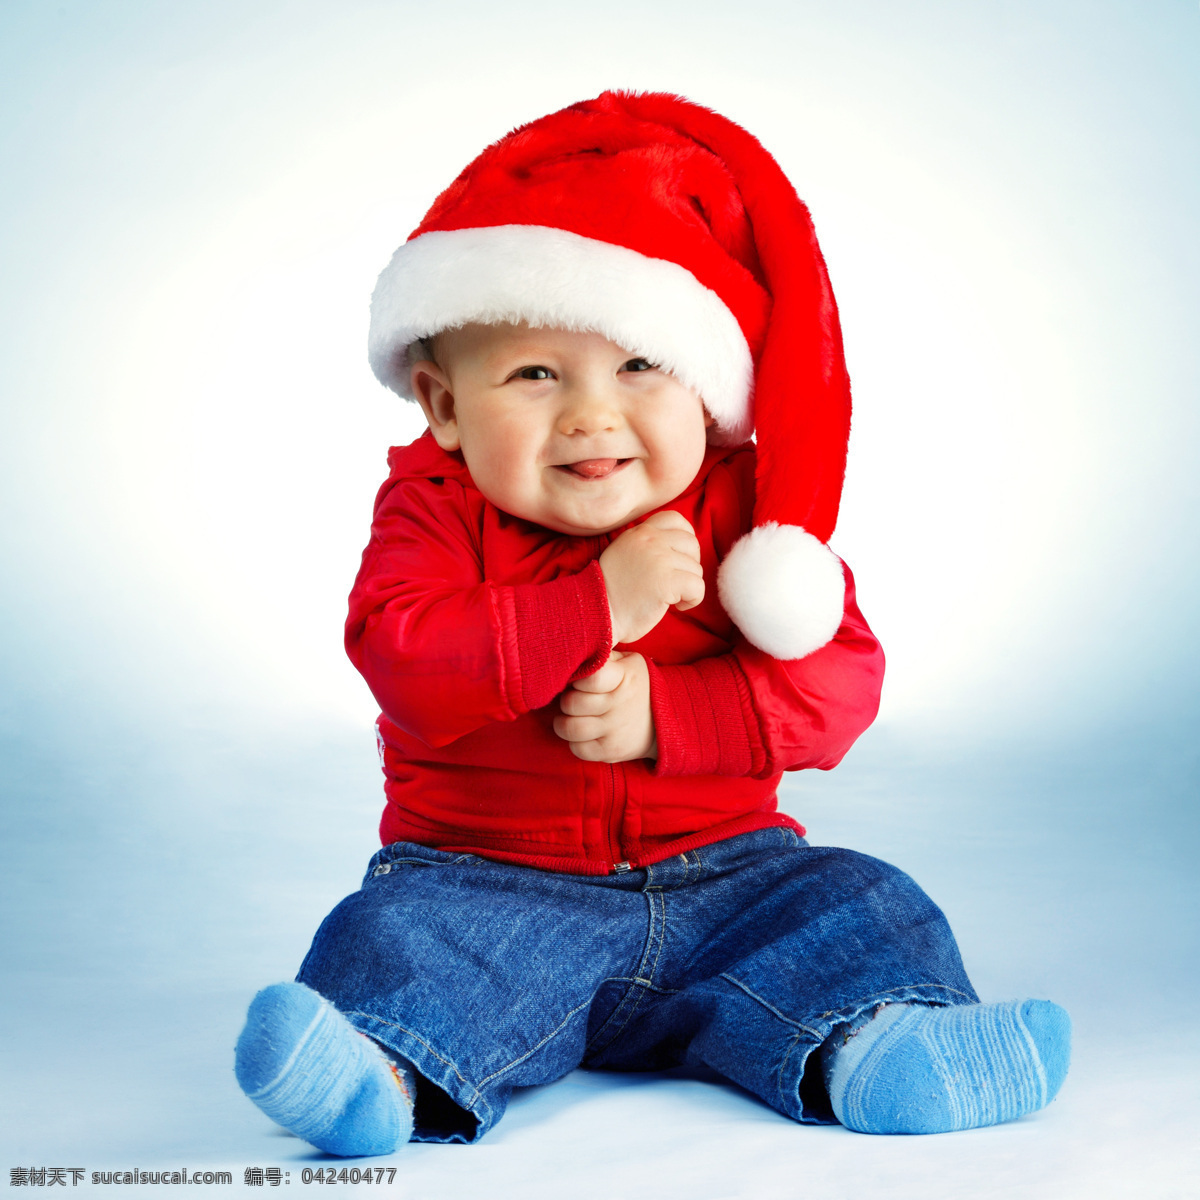 戴 圣诞 帽子 宝宝 圣诞儿童 圣诞宝宝 儿童幼儿 小孩子 儿童插画 圣诞节素材 圣诞节 节日素材 宝宝图片 人物图片